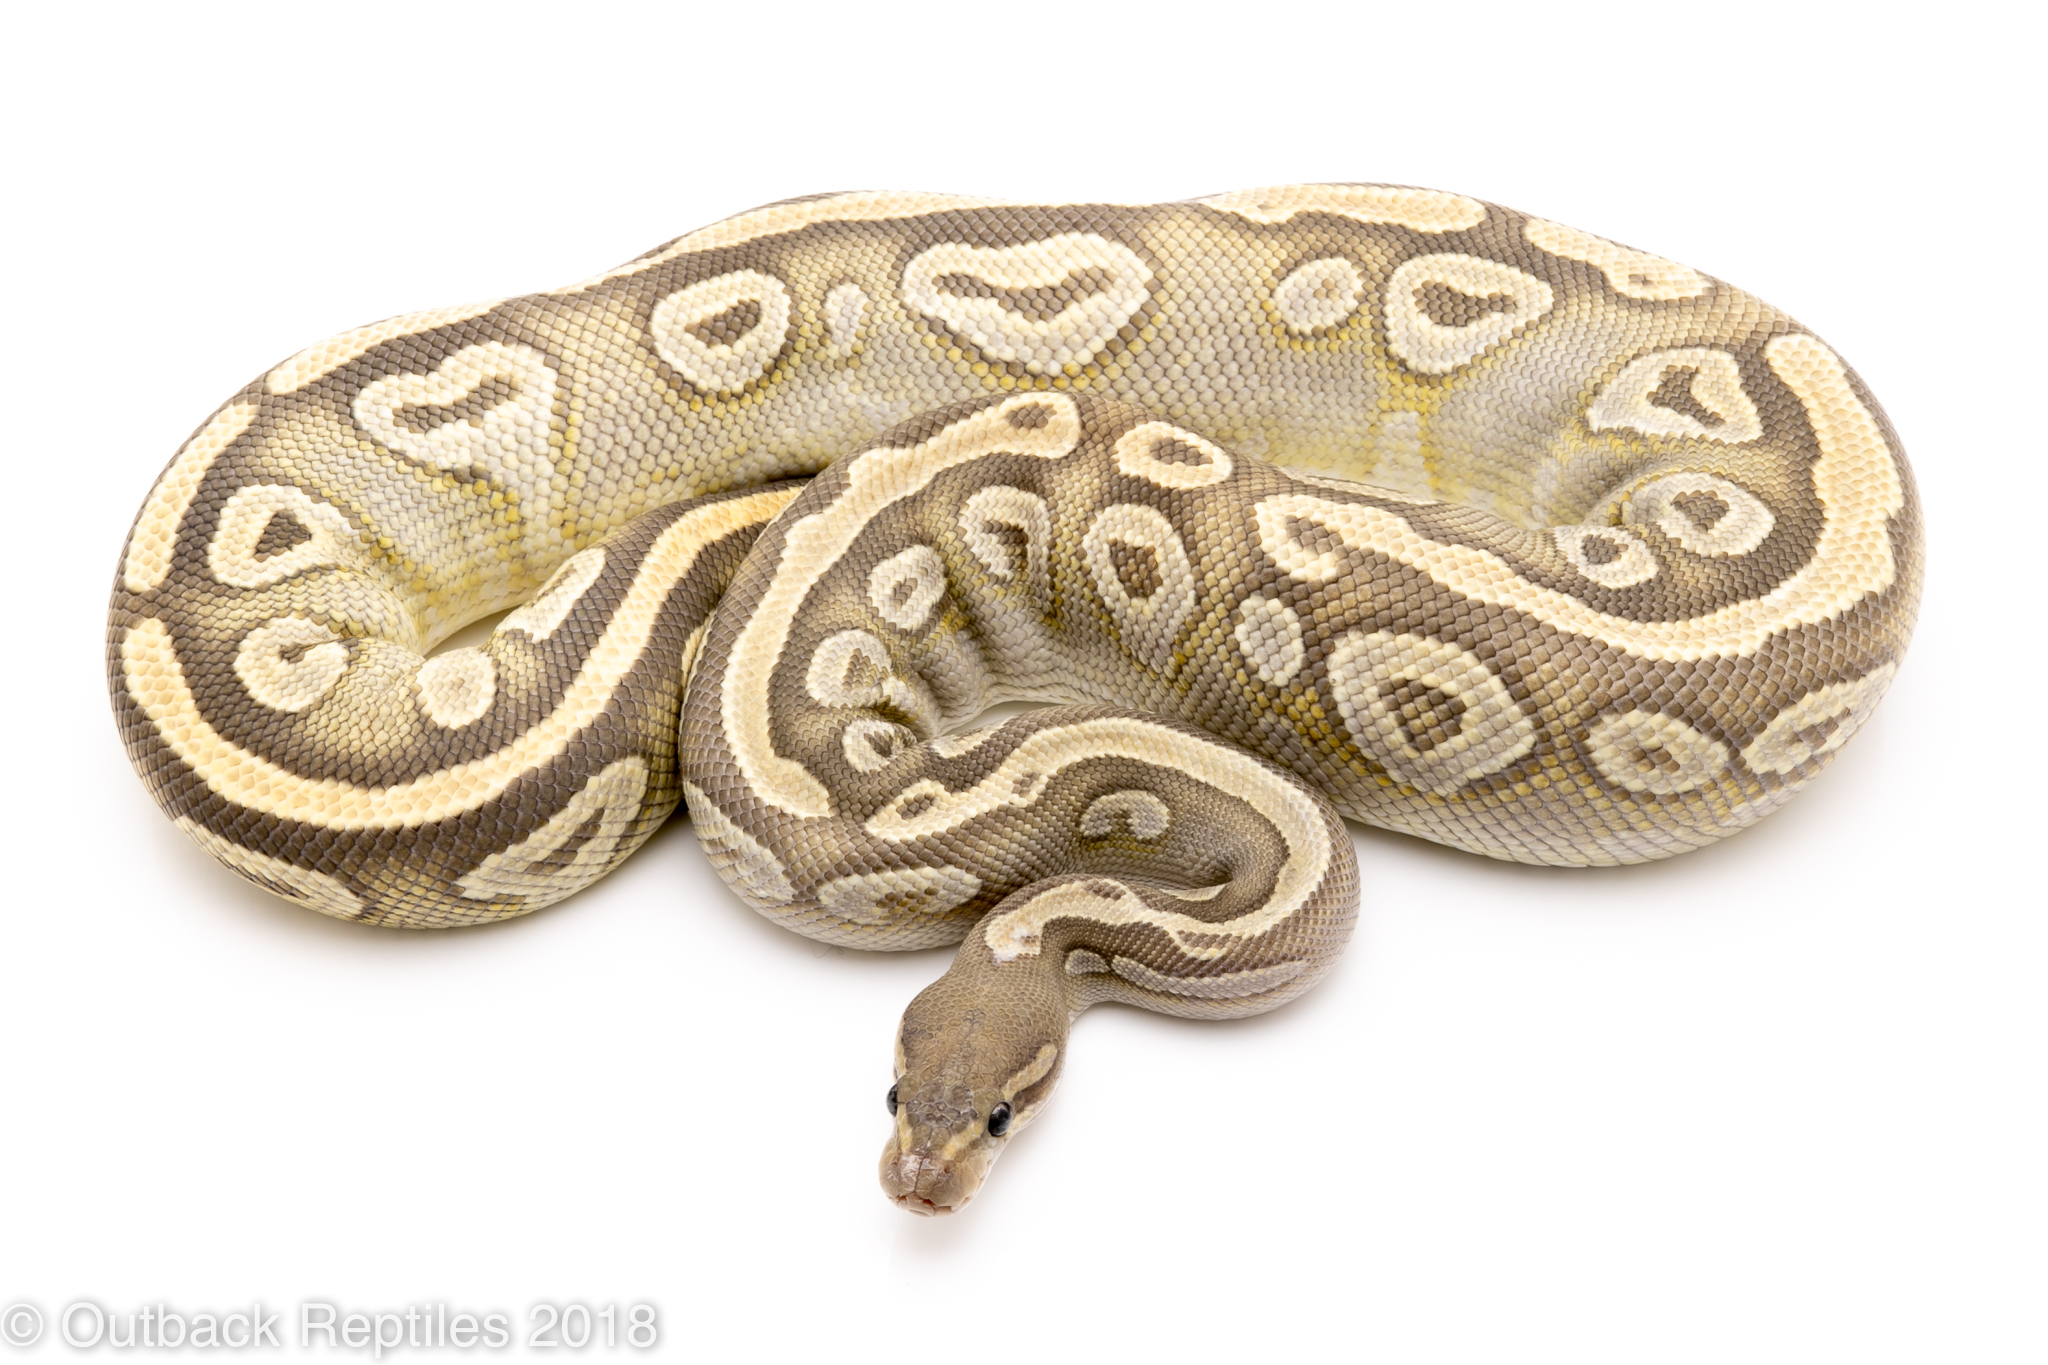 ghost mojave ball python for sale